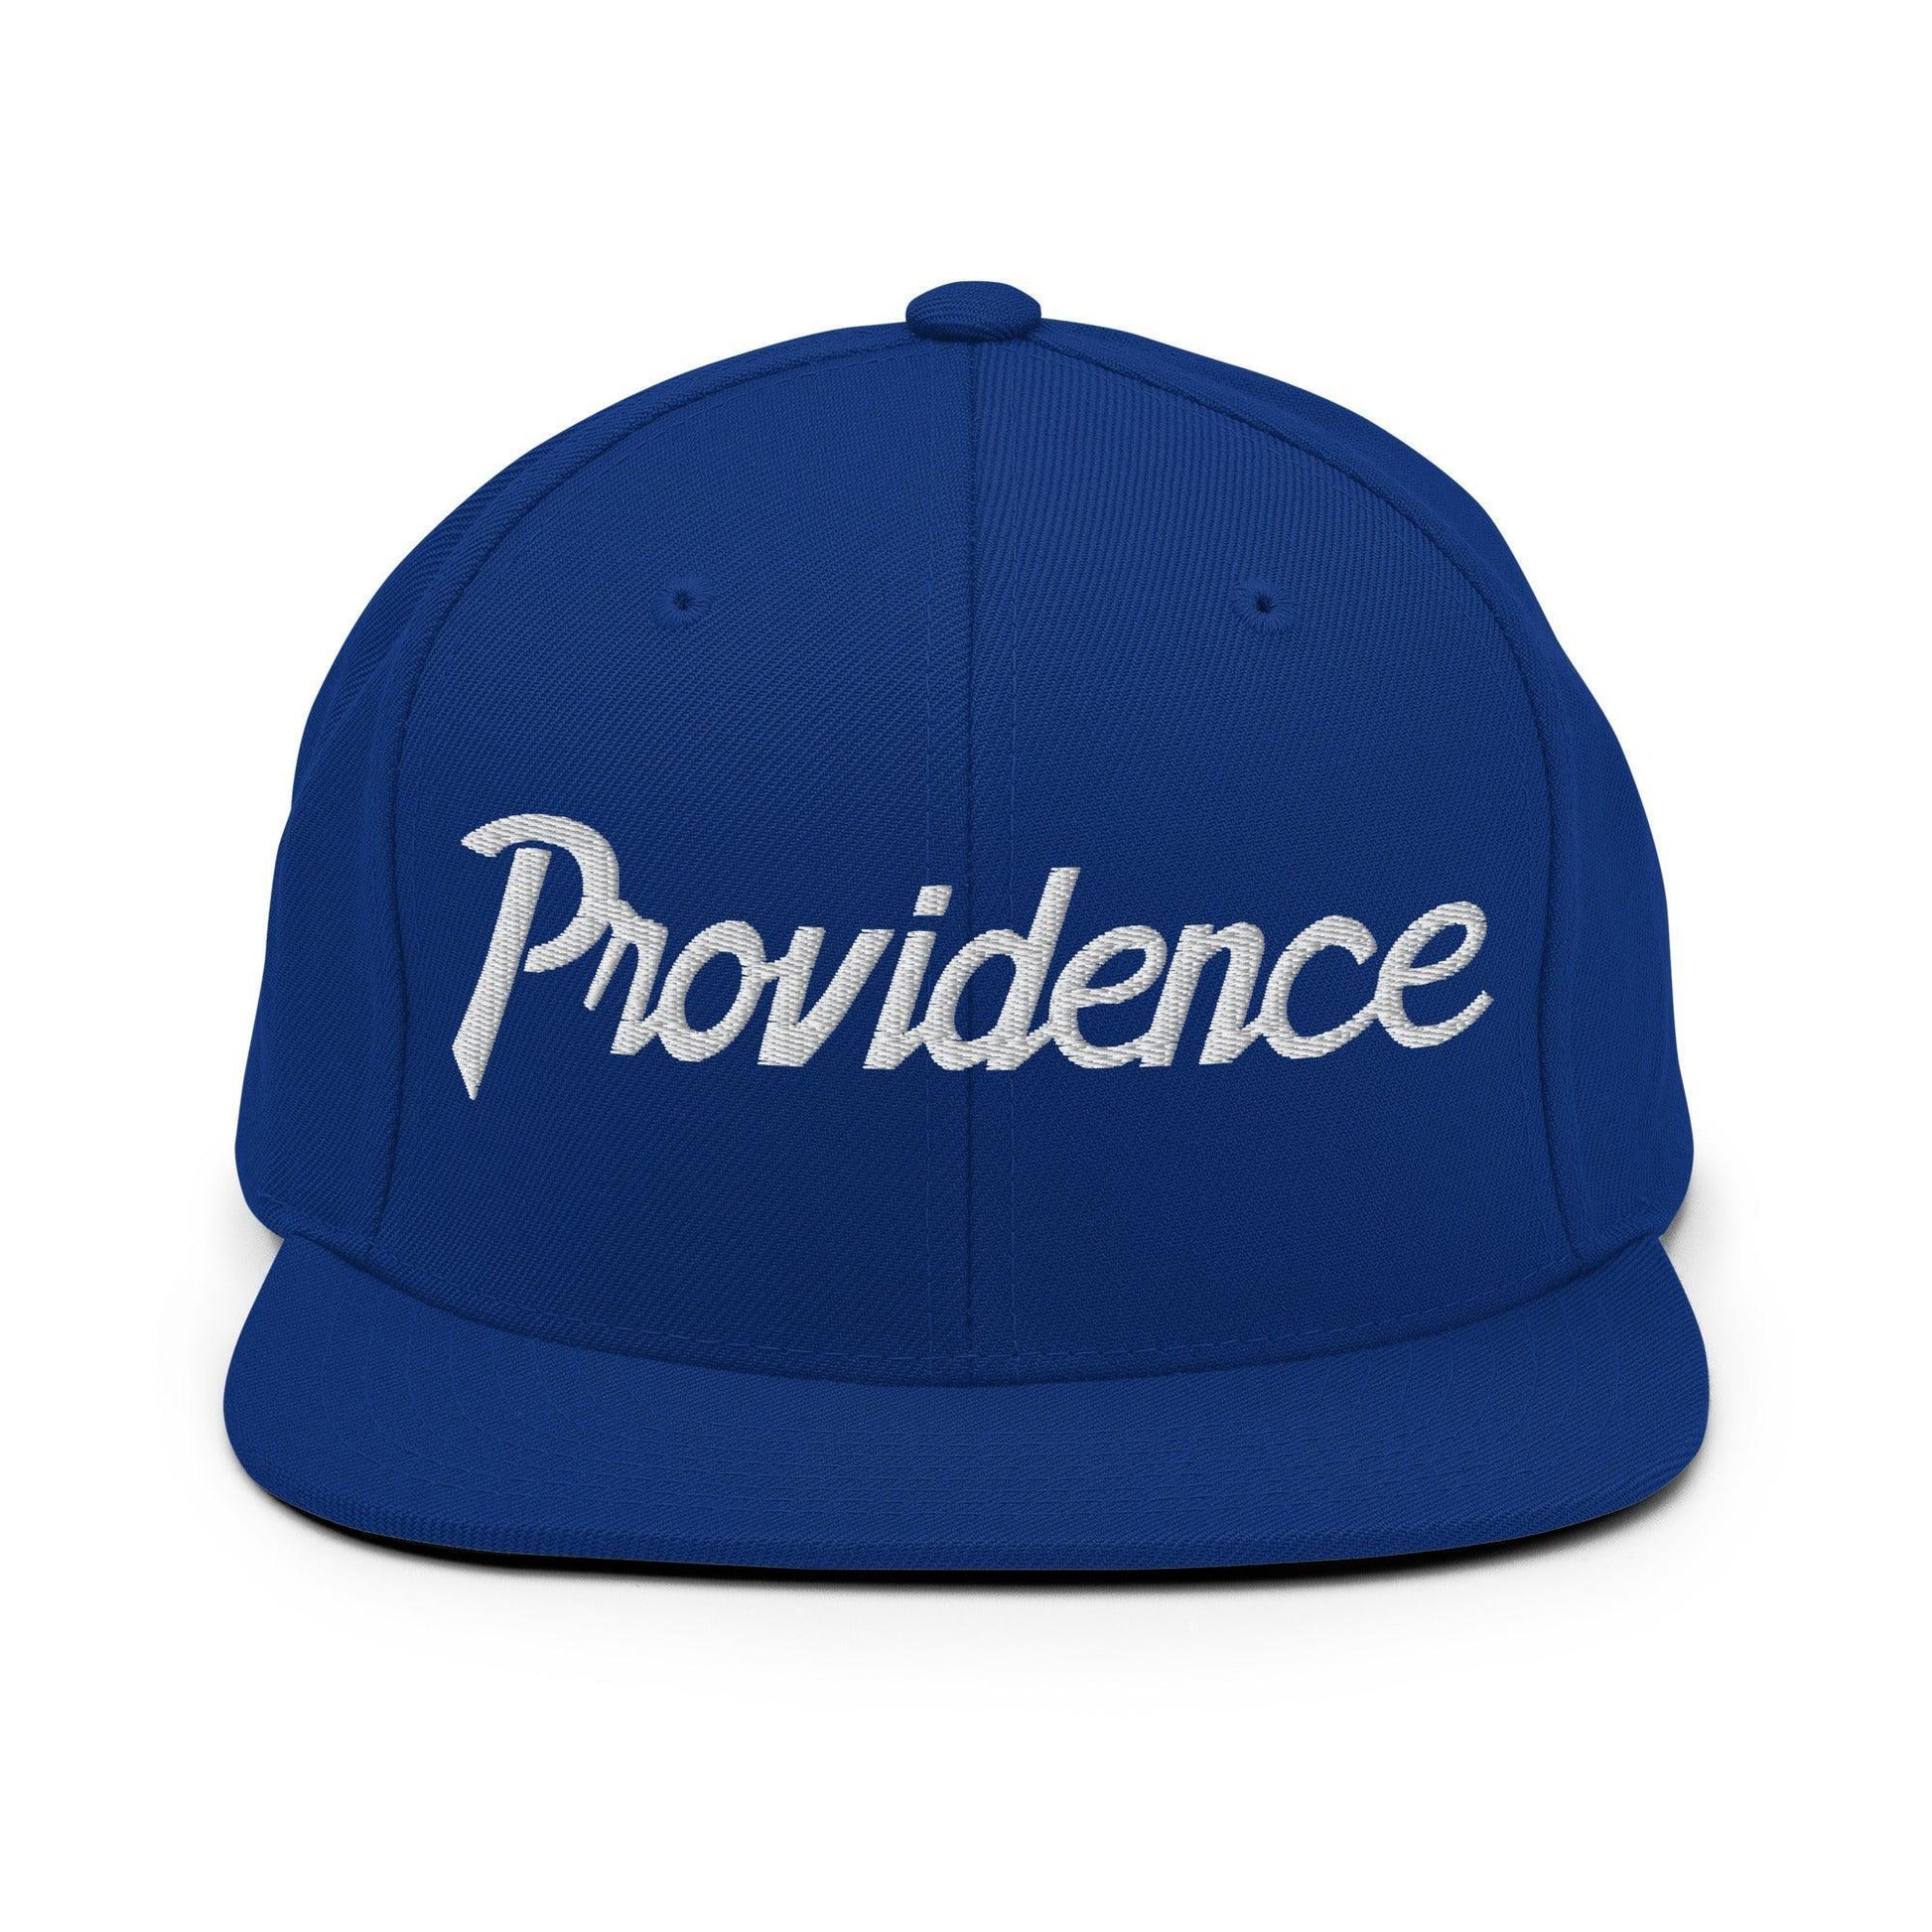 Providence Script Snapback Hat Royal Blue